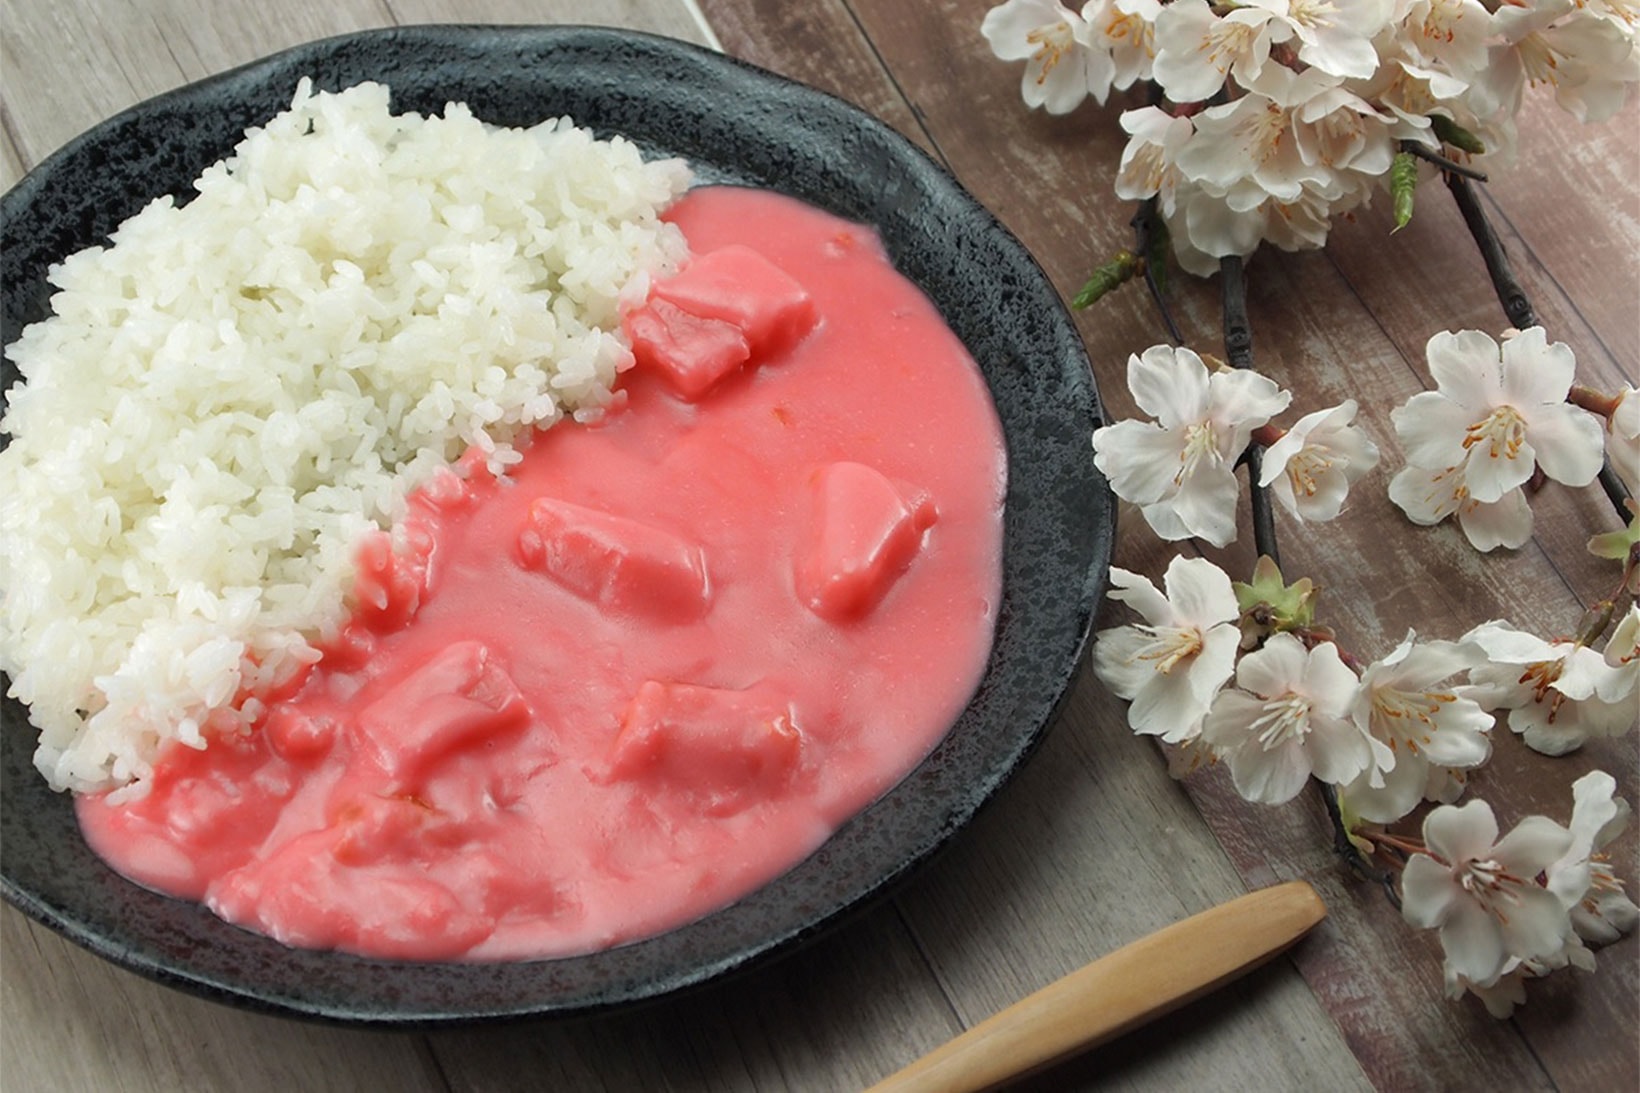 봄을 맞이해 출시되는 핑크색 ‘벚꽃 카레’는 어떤 맛일까? 라쿠텐, 직구, 커리, 레토르트, 3분 카레, 독특한 카레